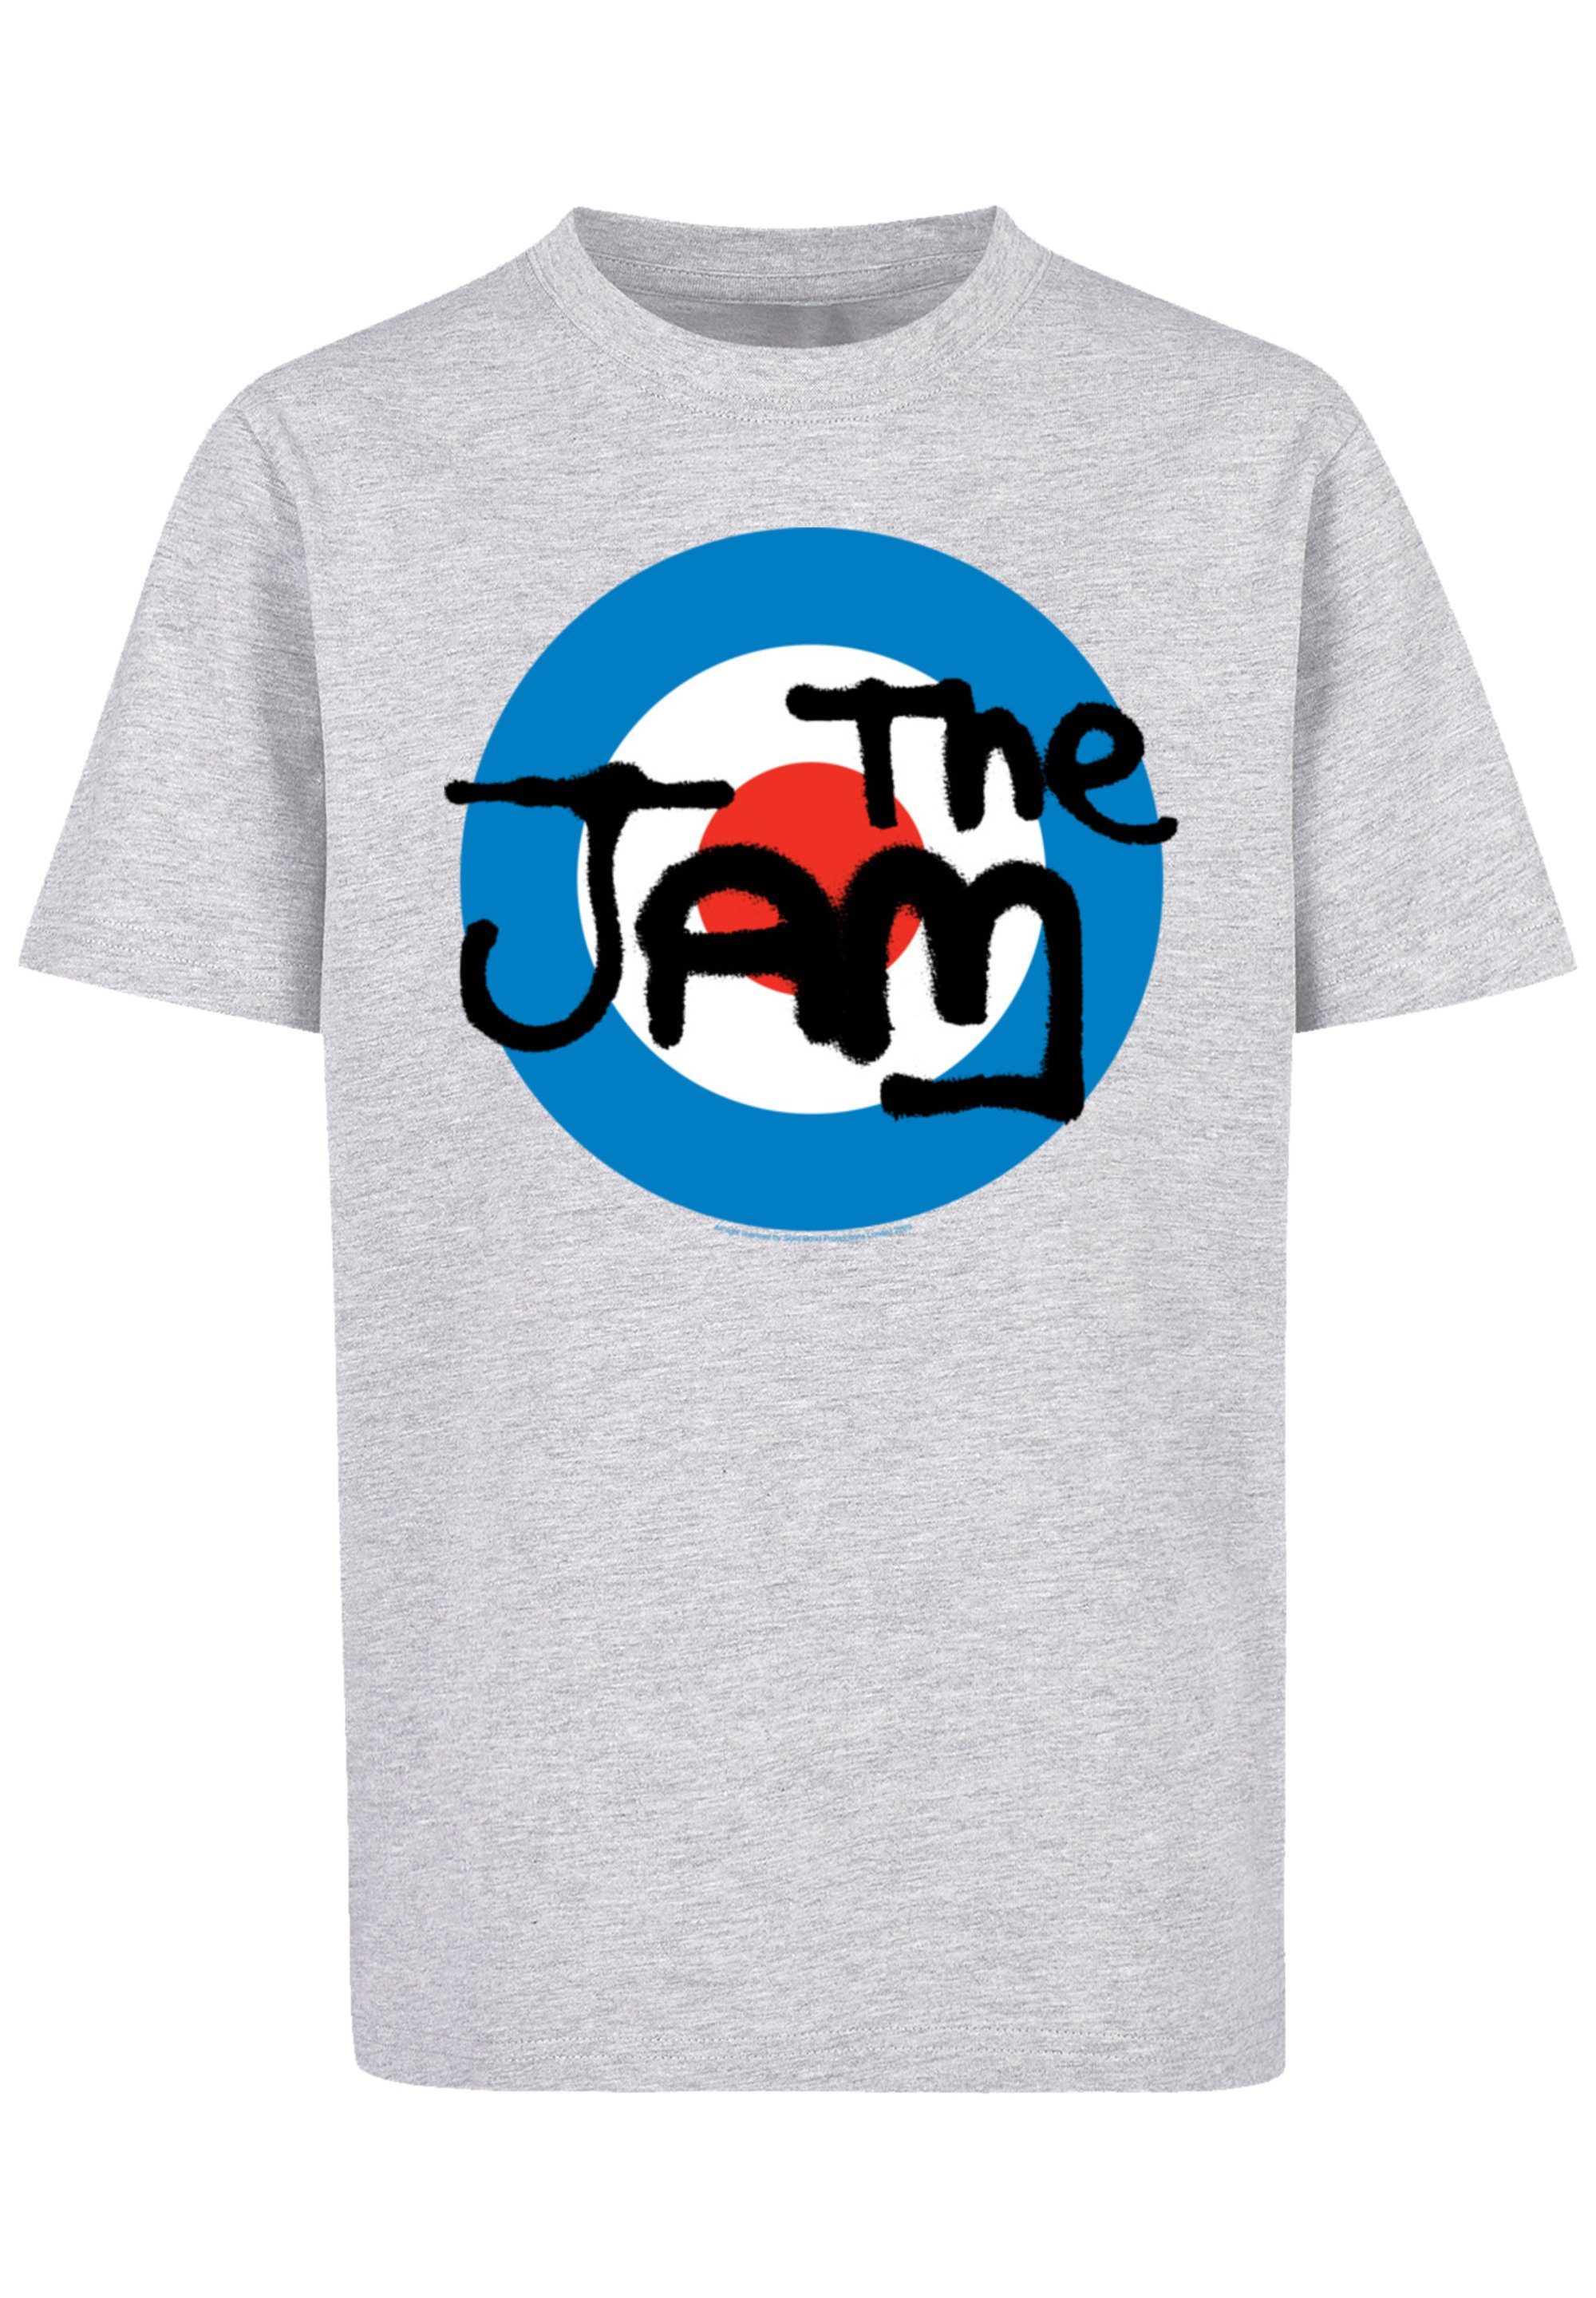 F4NT4STIC T-Shirt Qualität, Tragekomfort Band Baumwollstoff hohem The Premium mit Classic weicher Sehr Logo Jam